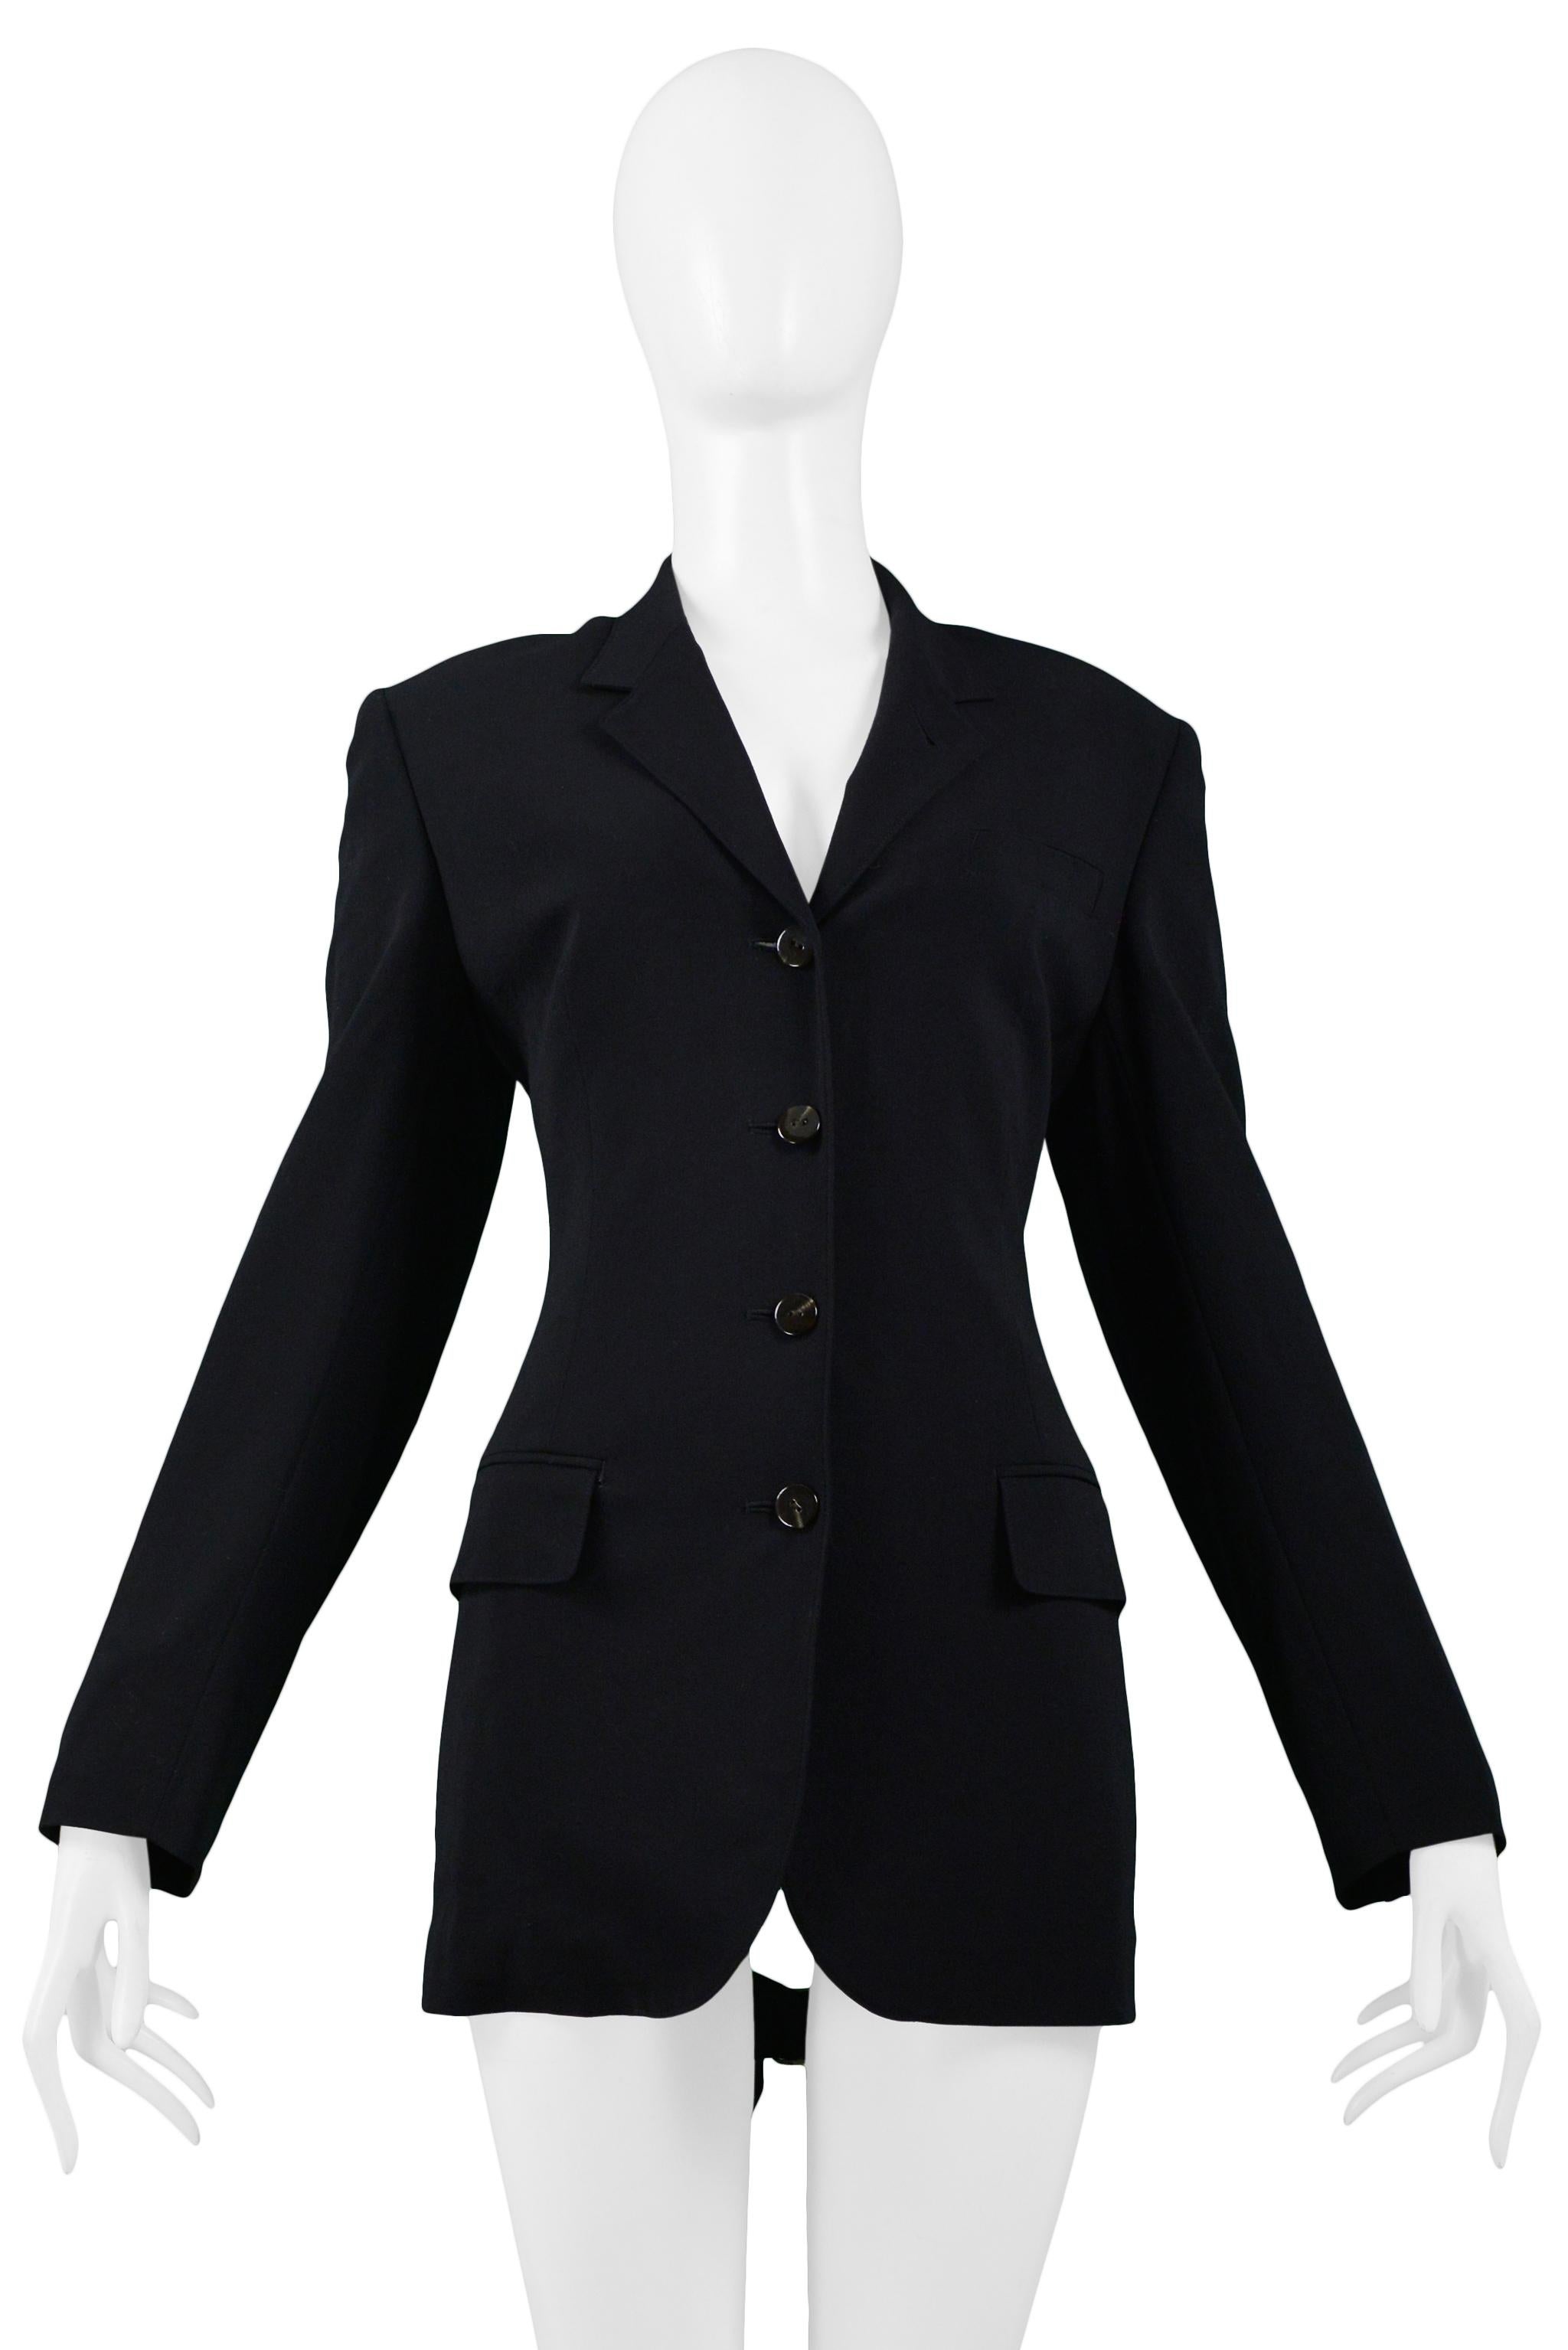 Resurrection Vintage a le plaisir de vous proposer une veste blazer noire vintage Jean Paul Gaultier avec un devant ajusté à trois boutons:: des poches latérales à rabat sur le devant:: un panneau arrière découpé comportant cinq sangles à boucle